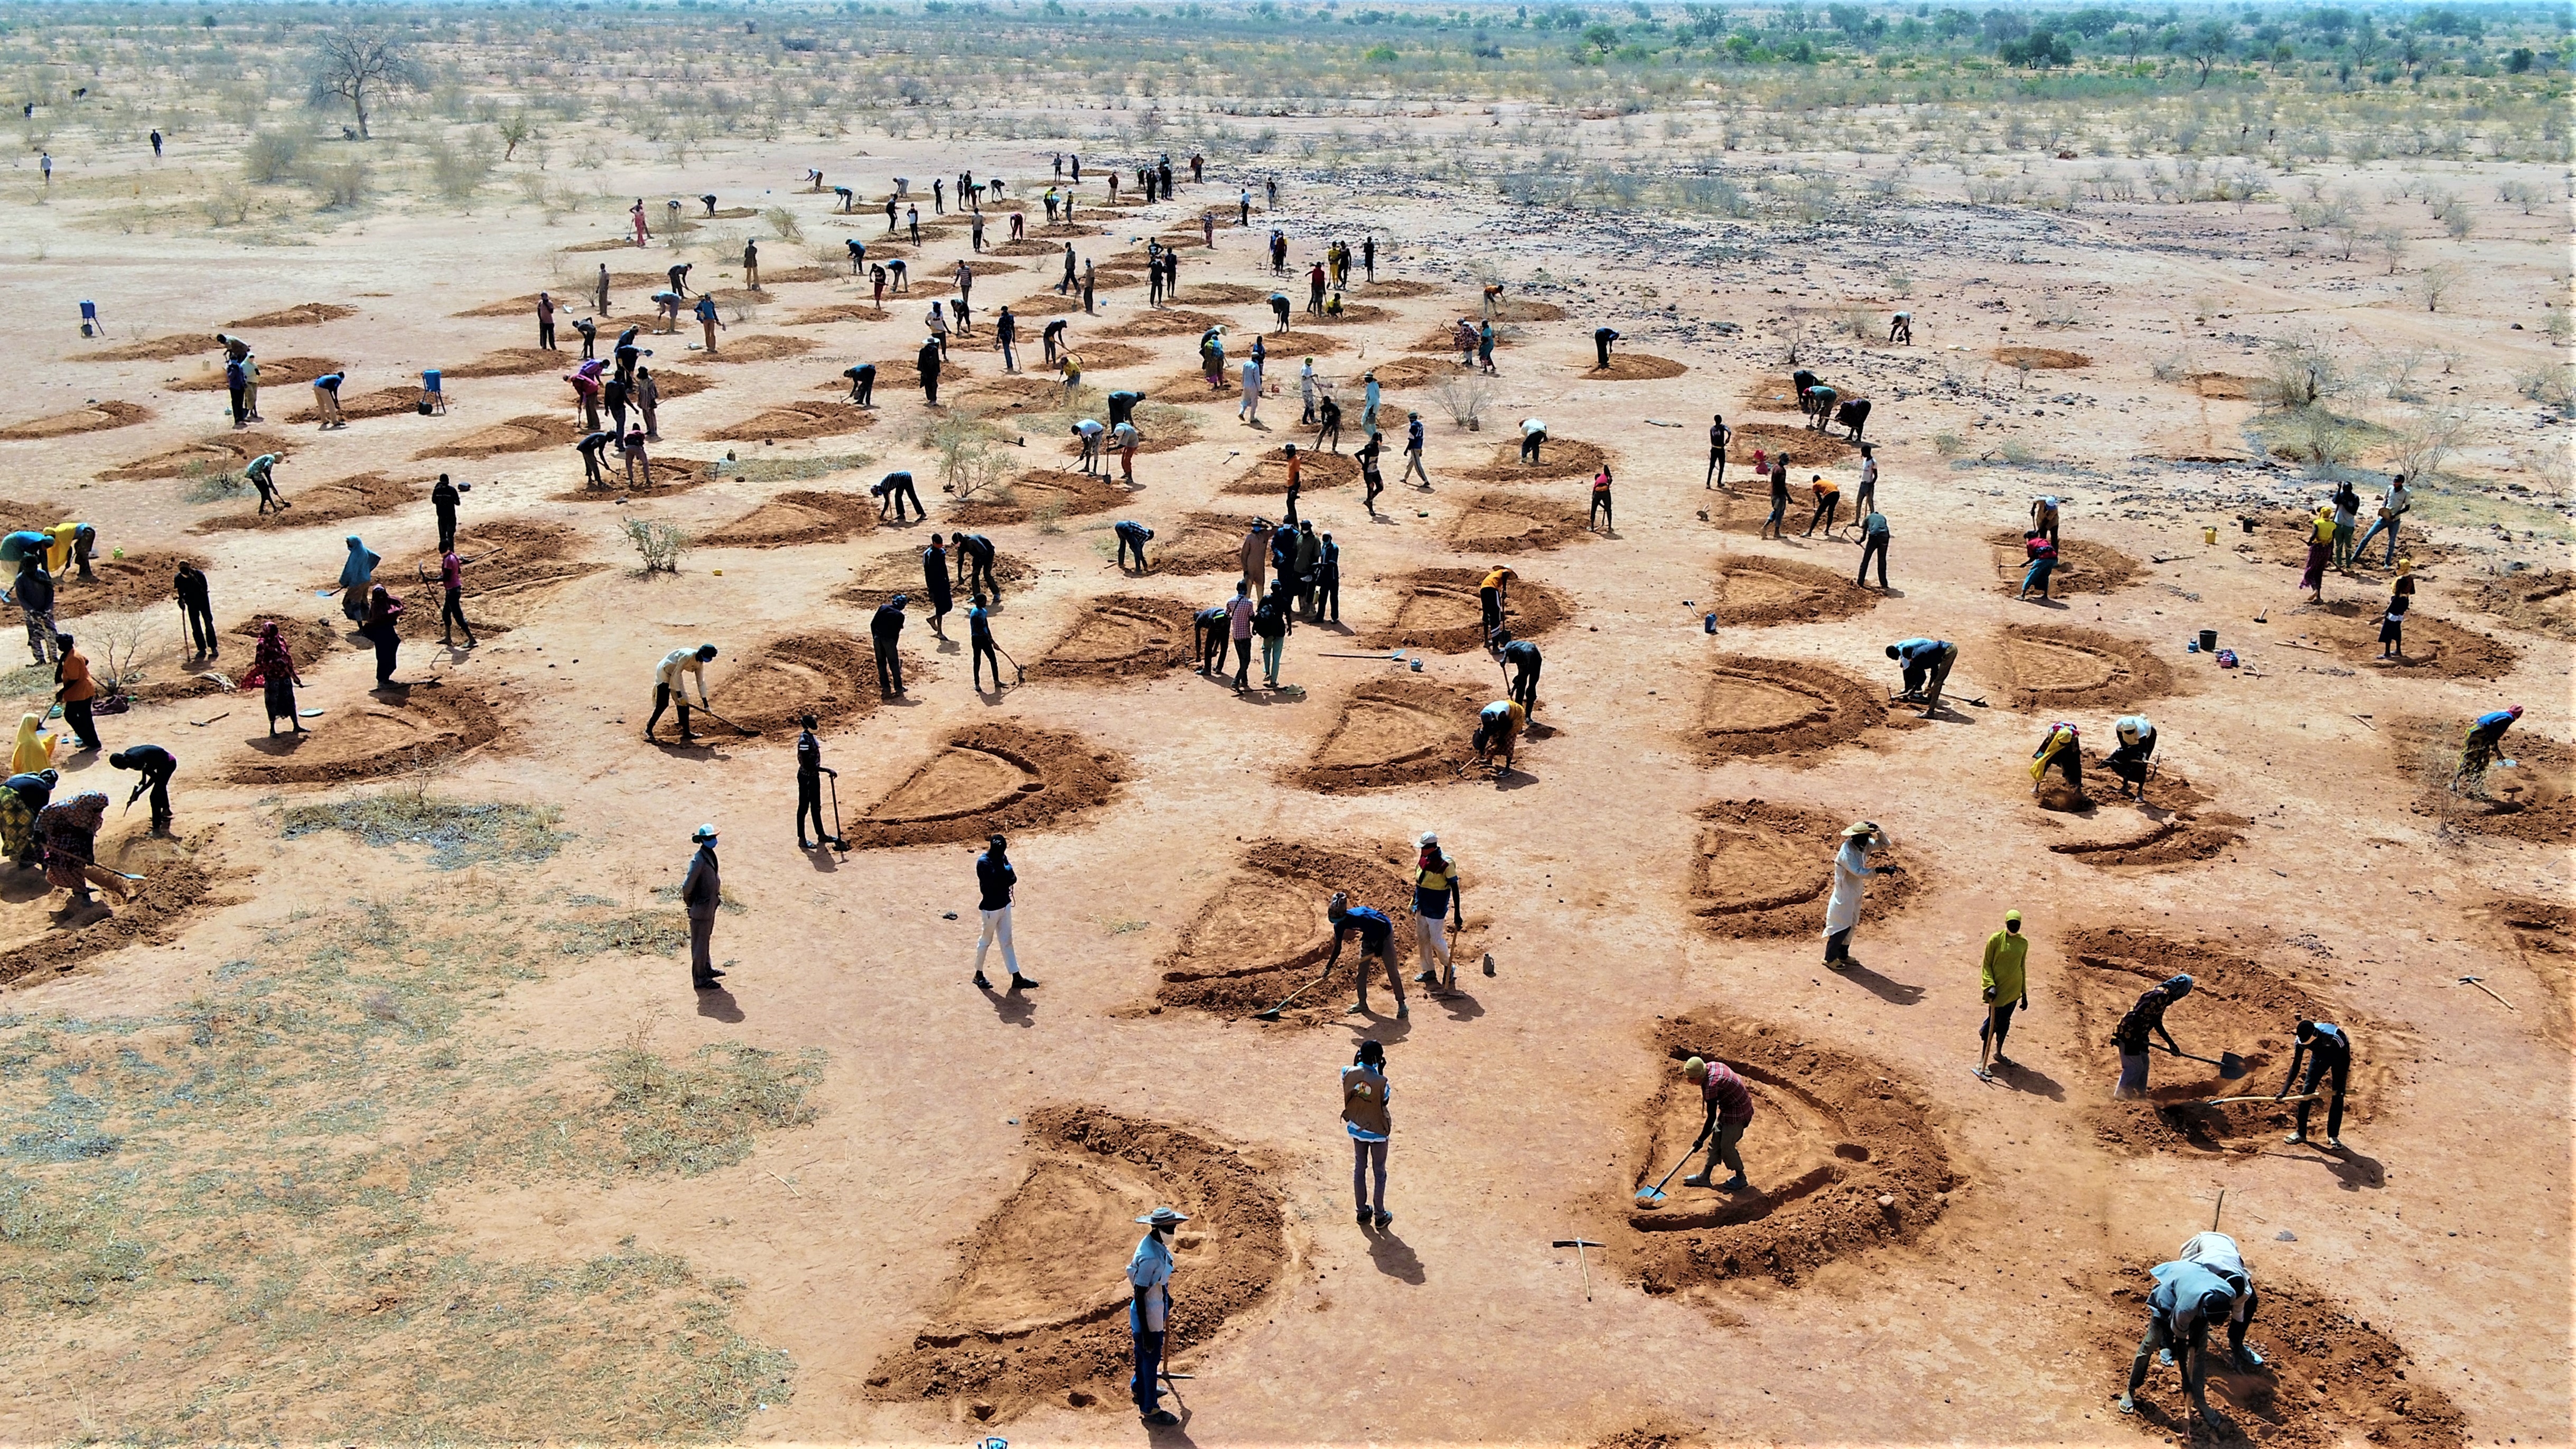 Bønder i Niger graver vanningssystemer for avlingene sine. 80 prosent av befolkningen er avhengige av jordbruk, men klimaendringer og tørke gjør de mer sårbare for matusikkerhet. Foto: verdens matvareprogram (WFP).